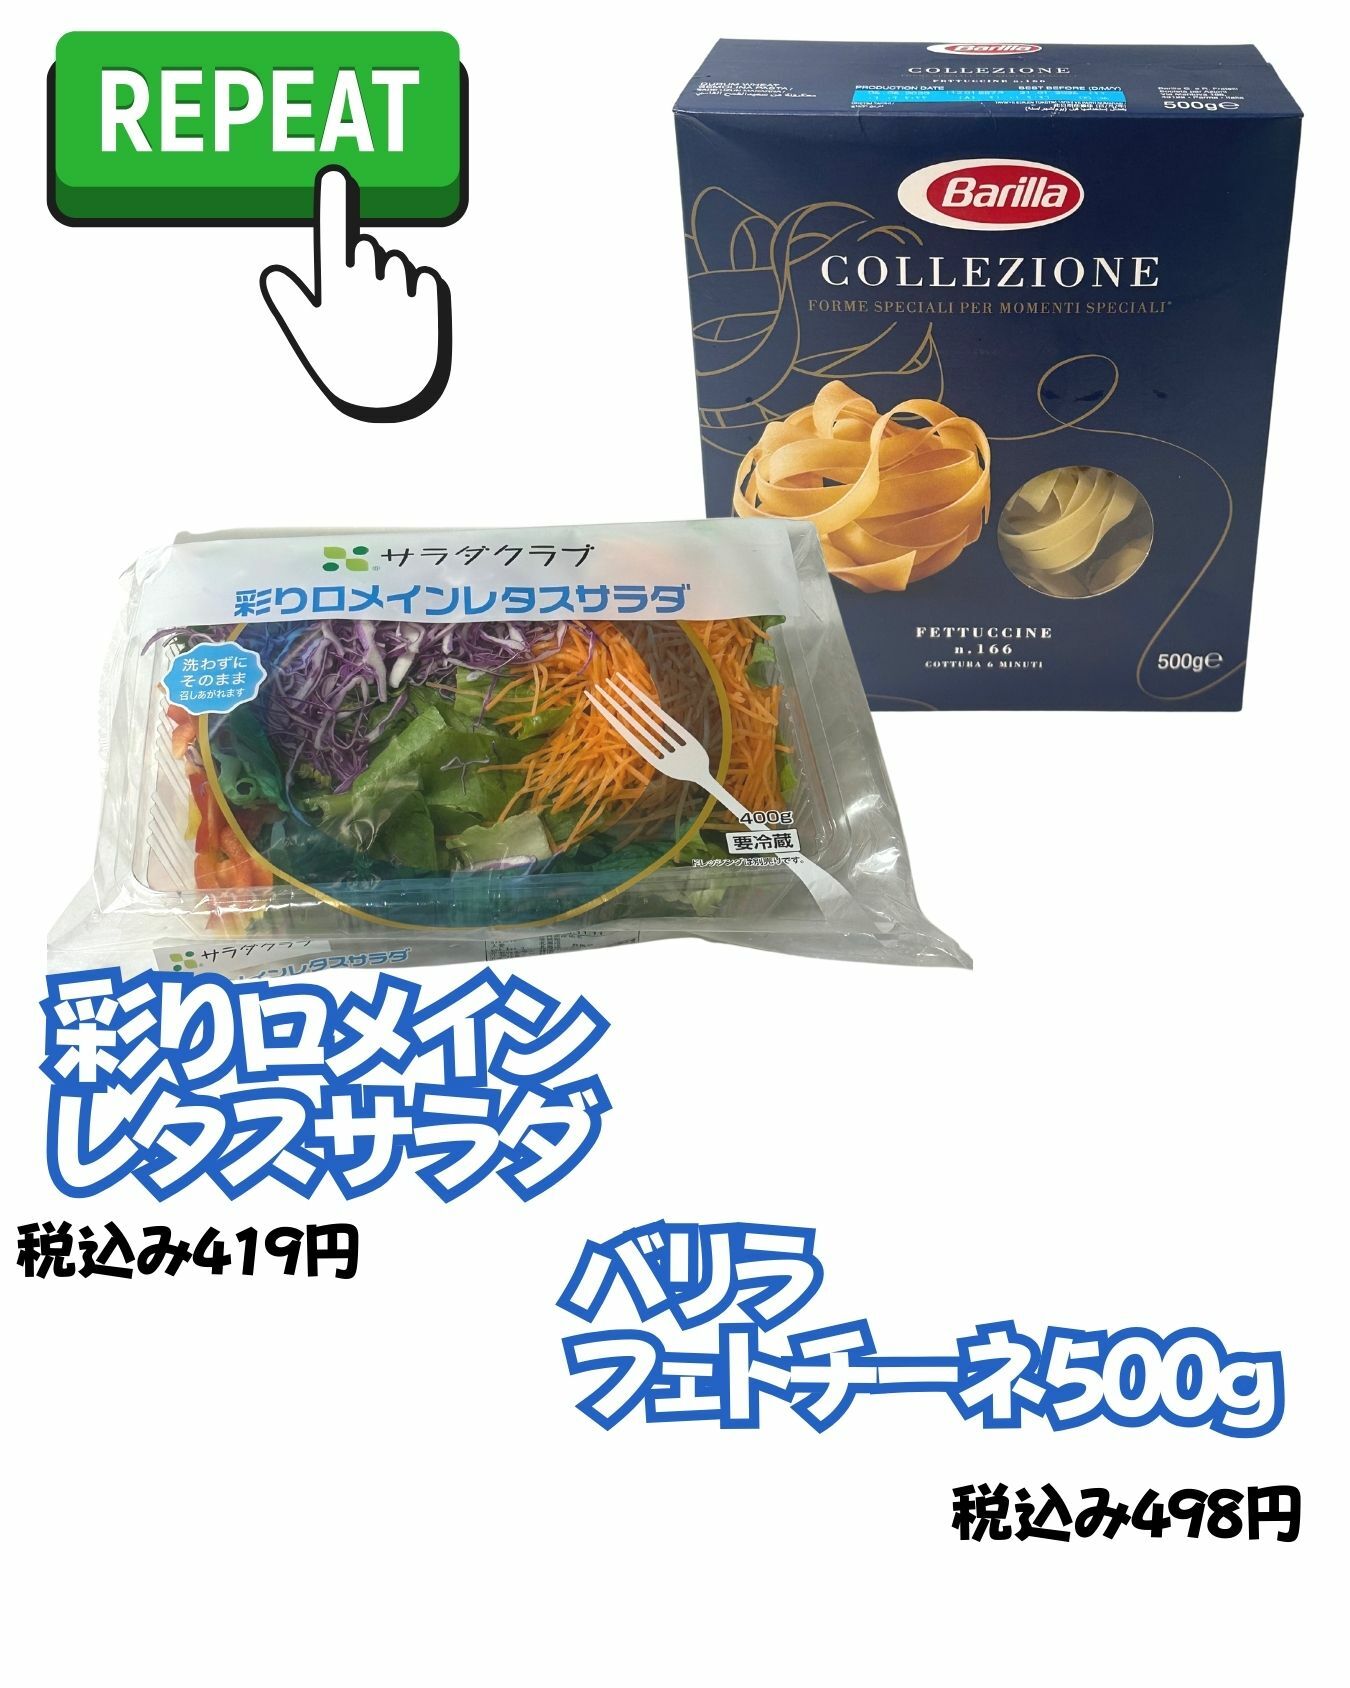 【コストコ】バリラの平打ち麺フェトチーネ500g/彩りロメインレタスサラダ